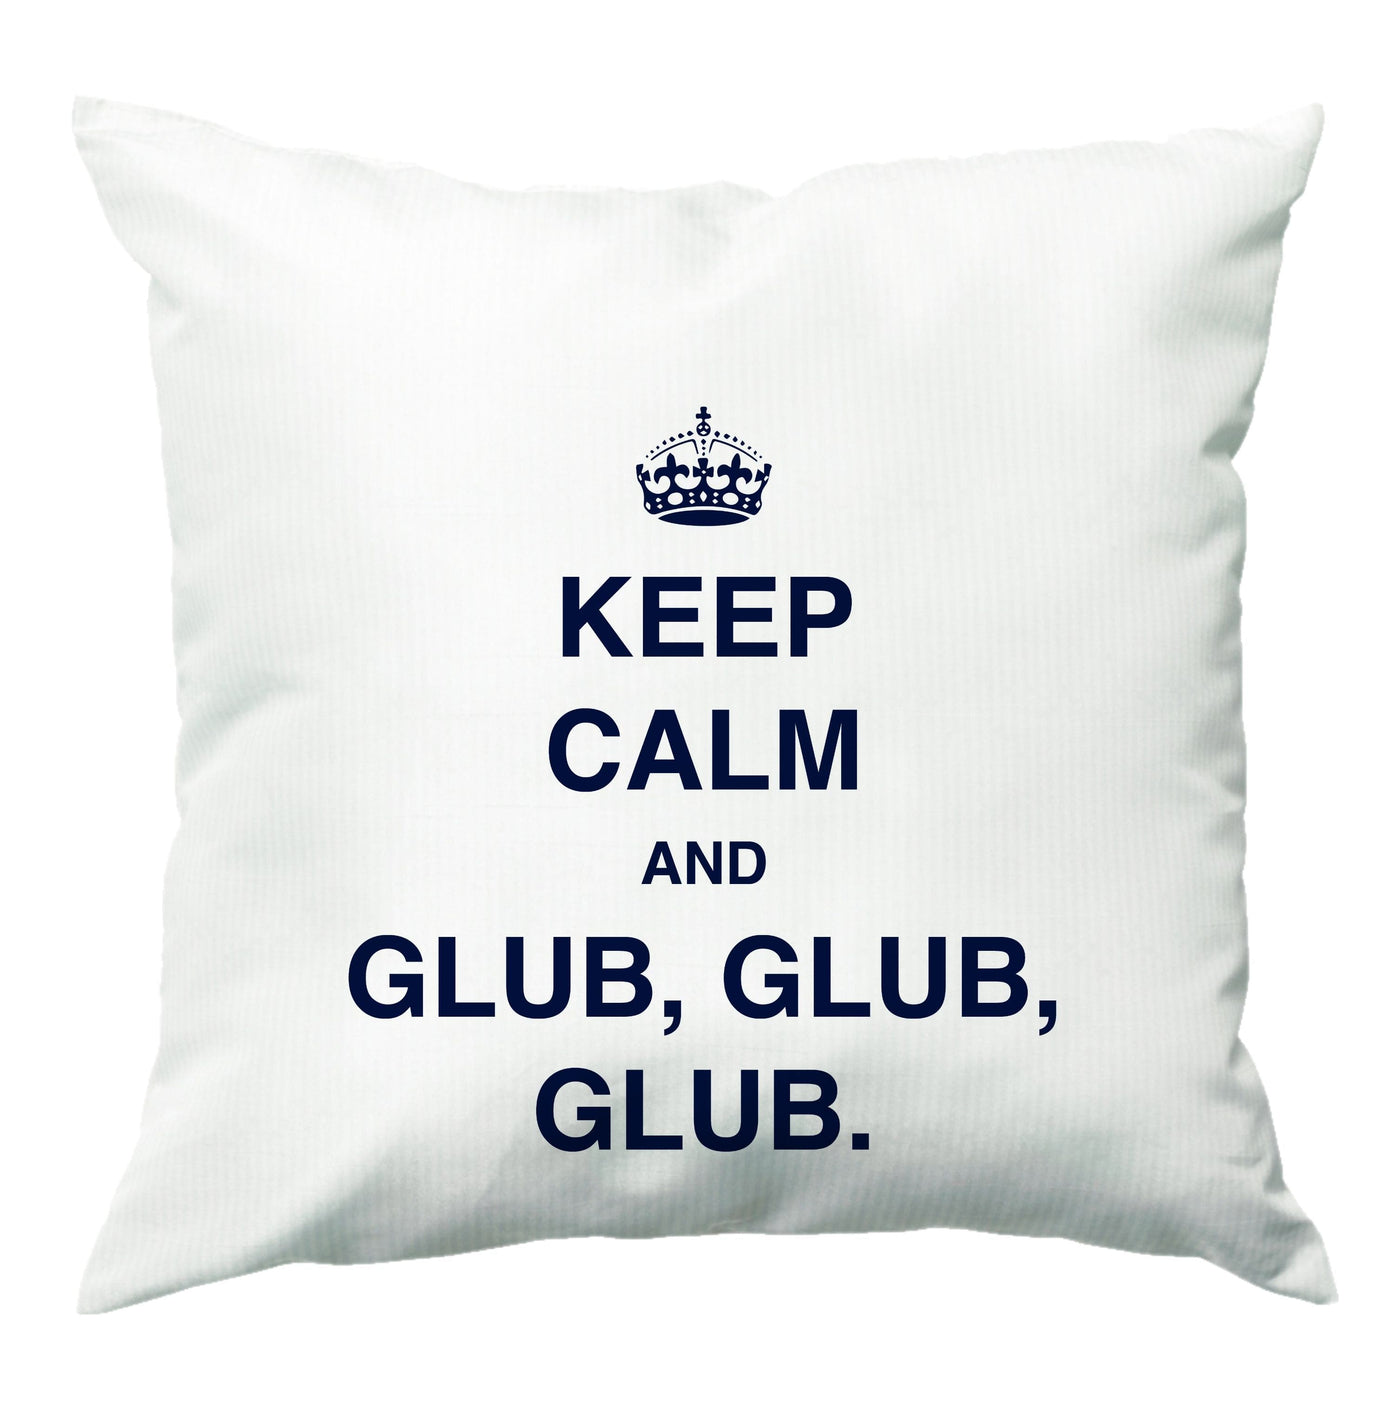 Keep Calm And Glub Glub - Brooklyn Nine-Nine Cushion